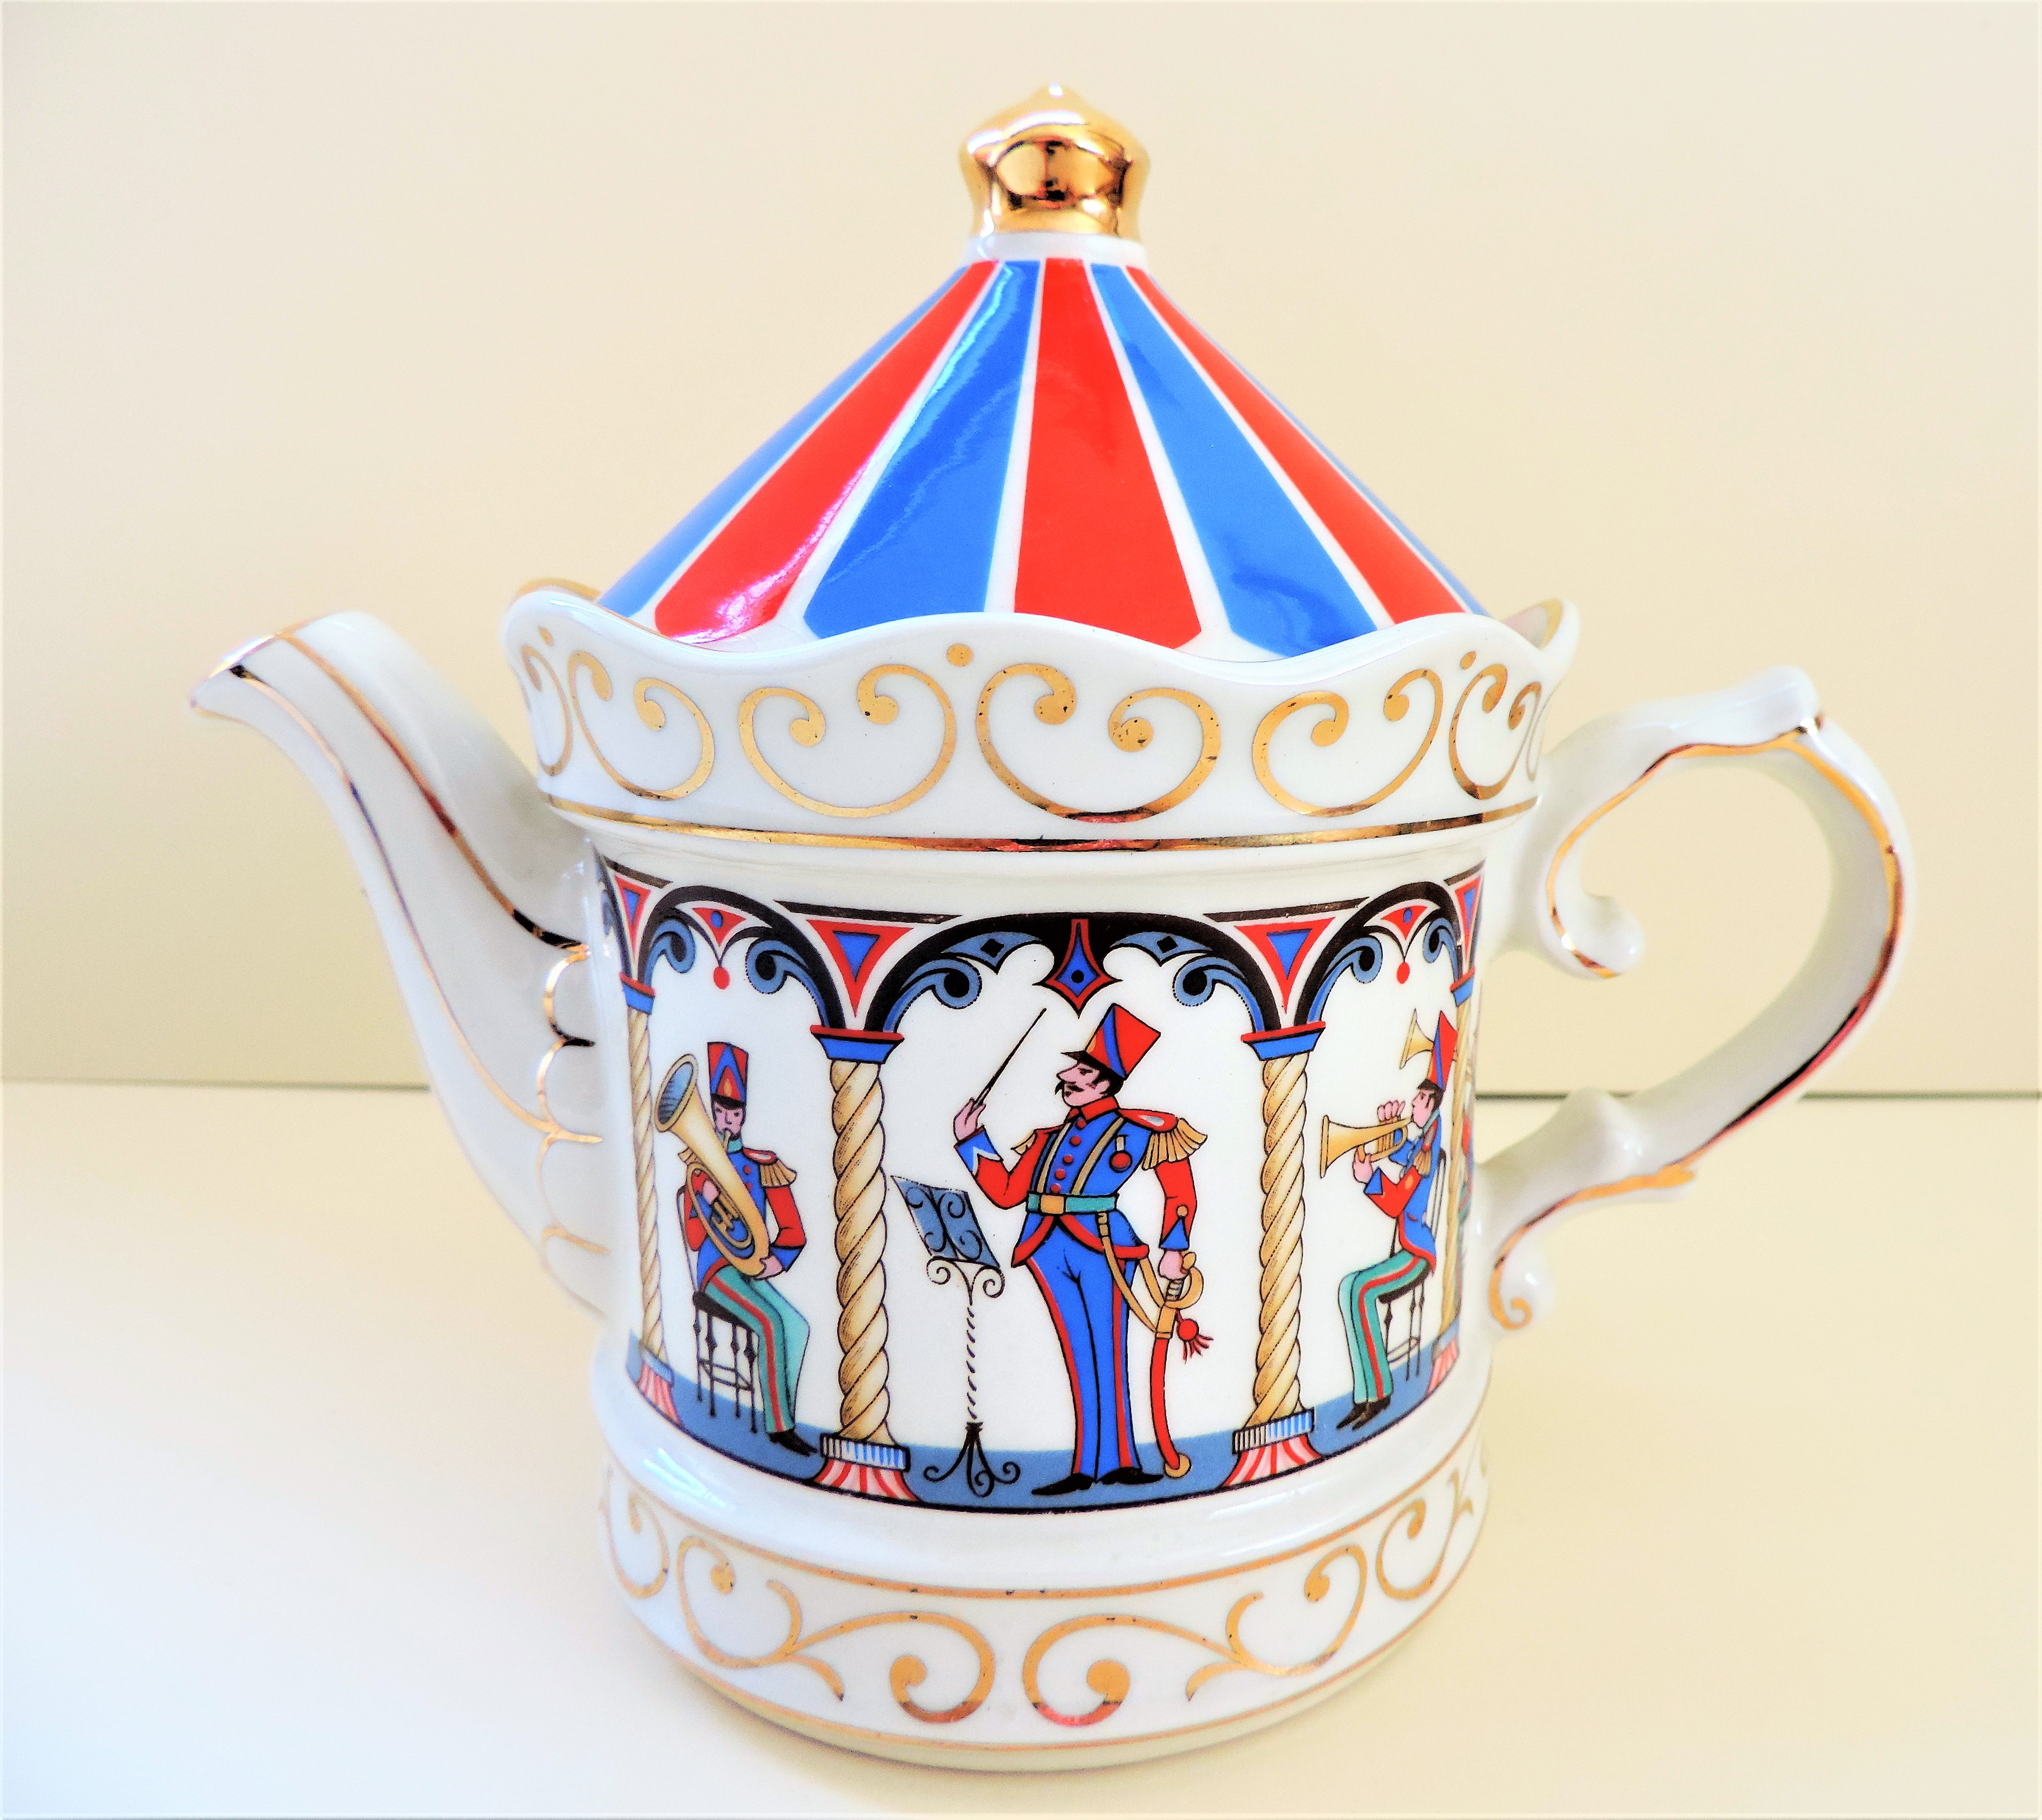 Vintage Sadler Bandstand Tea Pot Edwardian Entertainments - Image 2 of 4